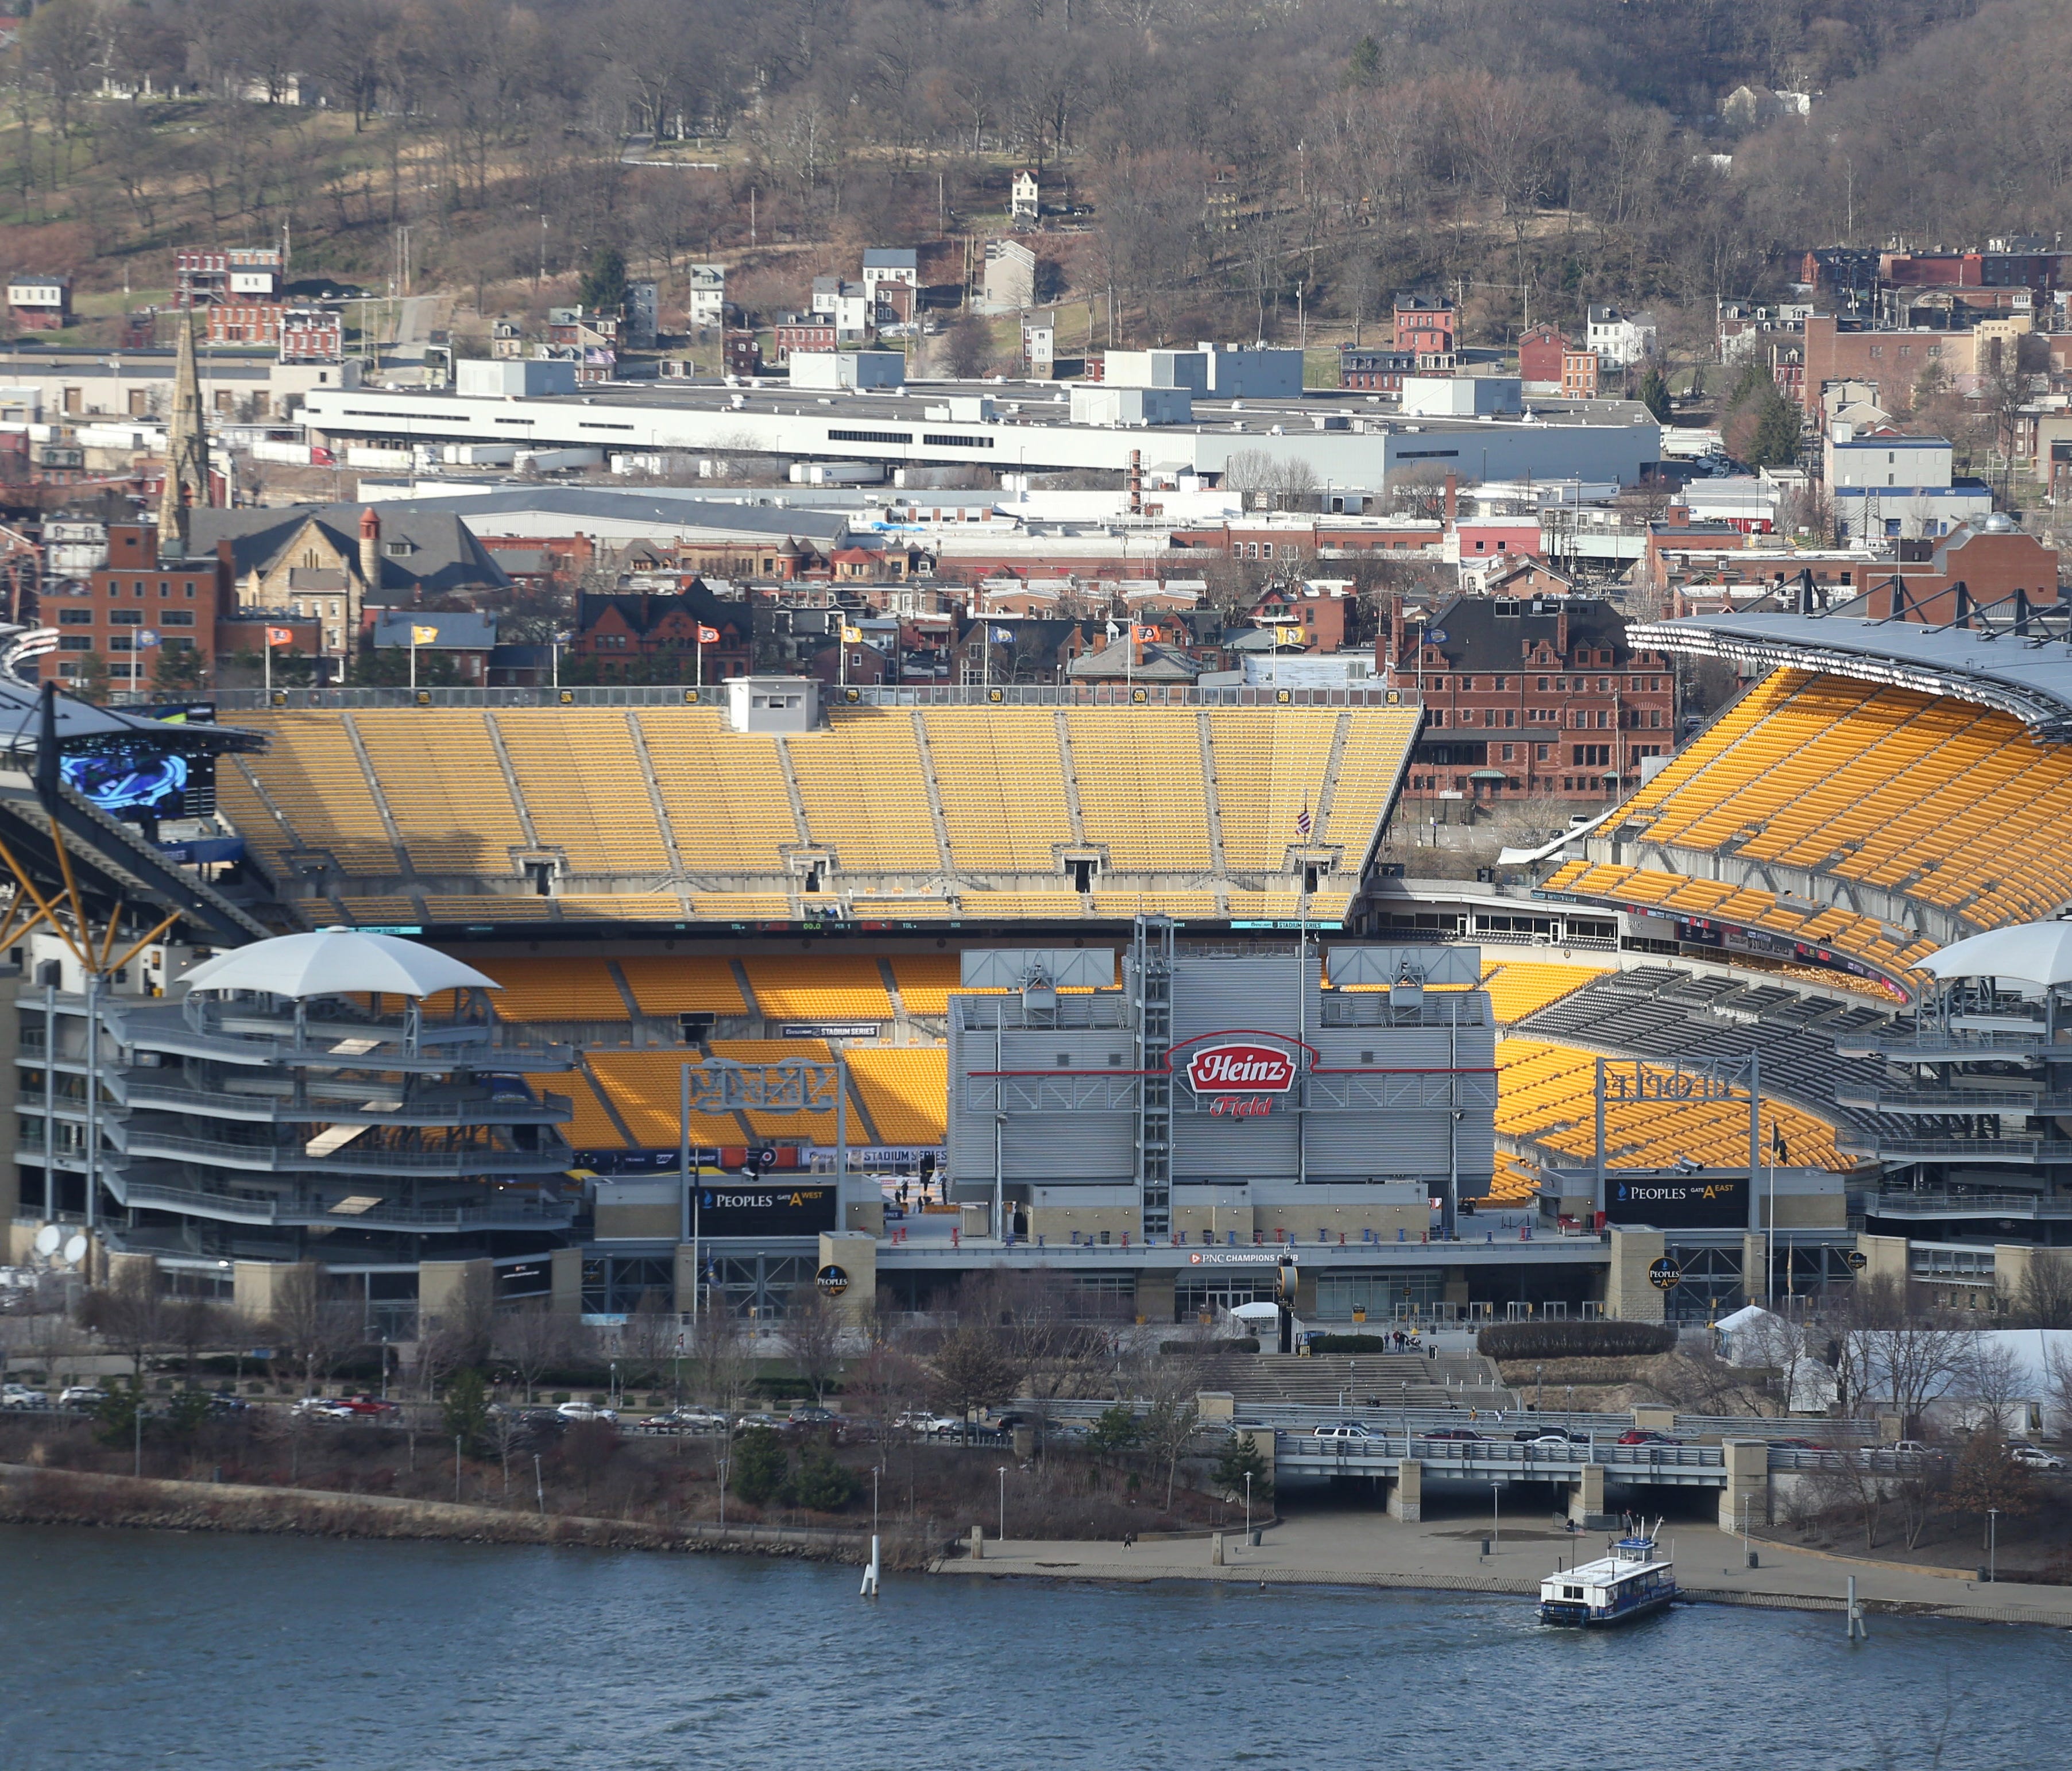 Heinz Field in Pittsburgh